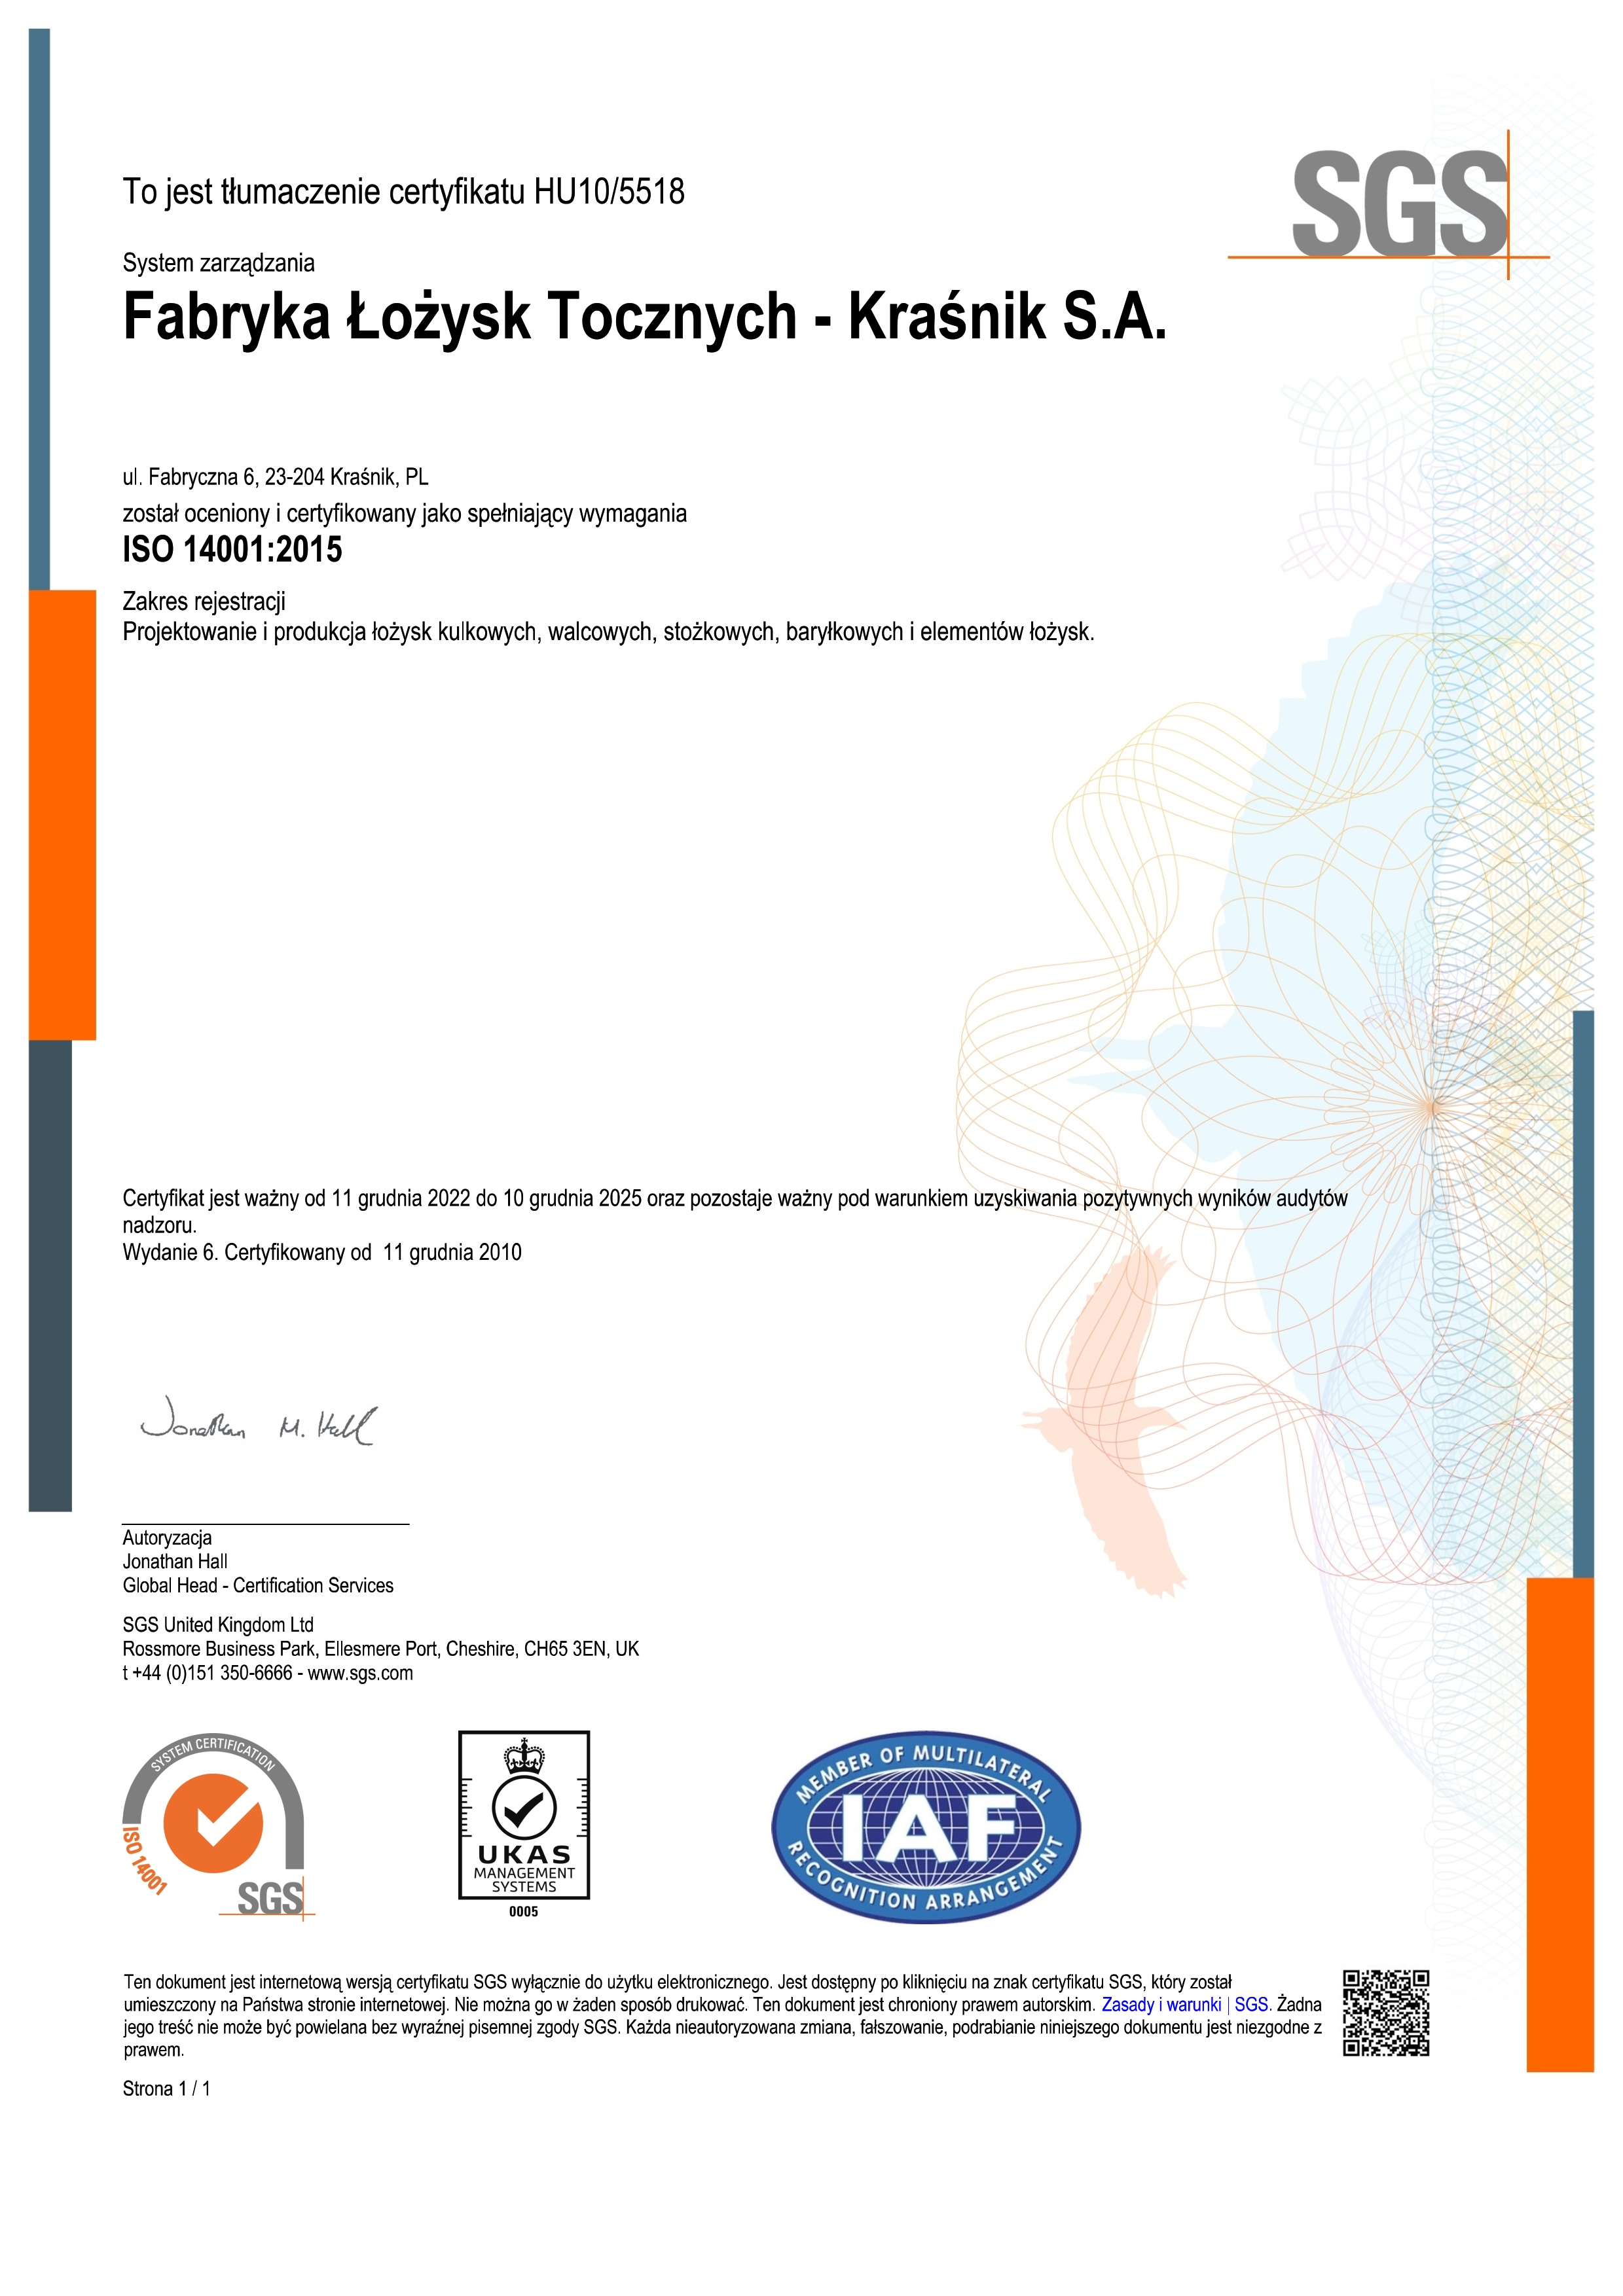 FLT Krasnik ISO14001 certificate pl 2022t 001